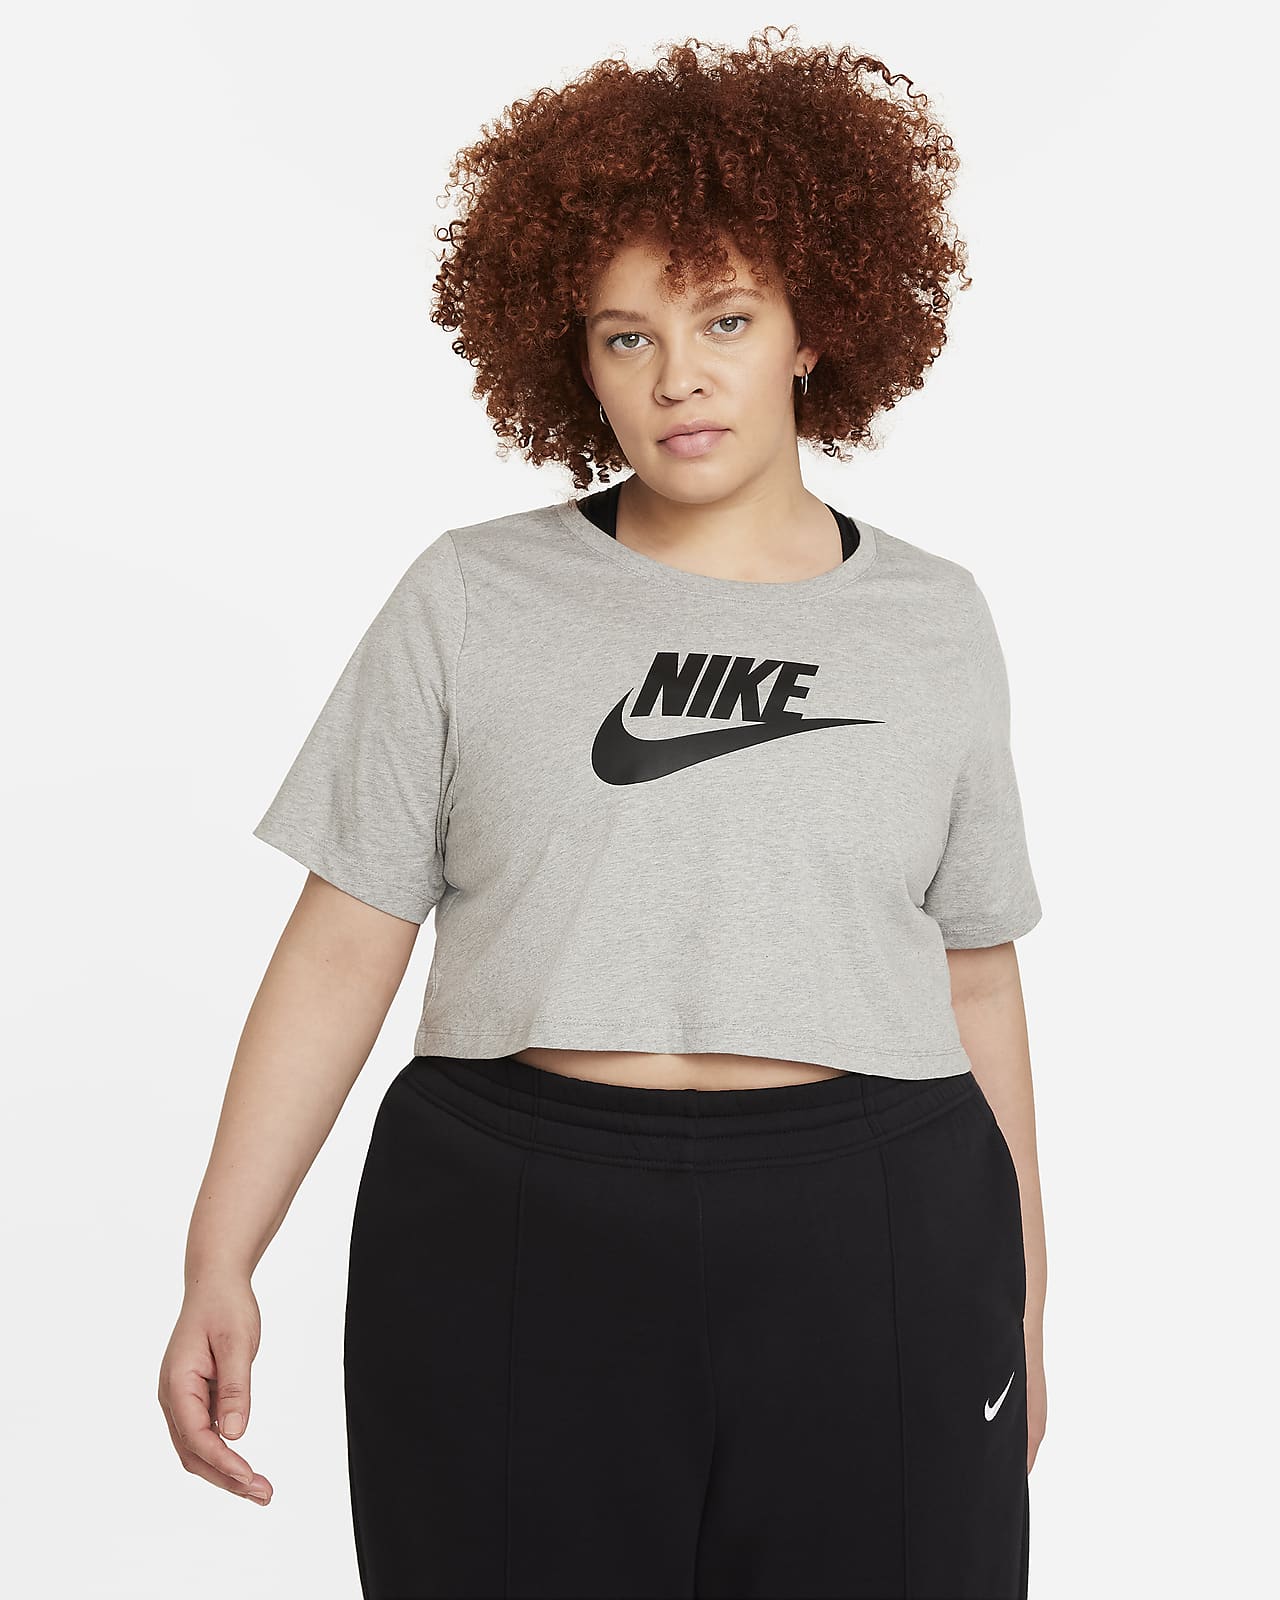 Nike Damen-T-Shirt (große Größe).